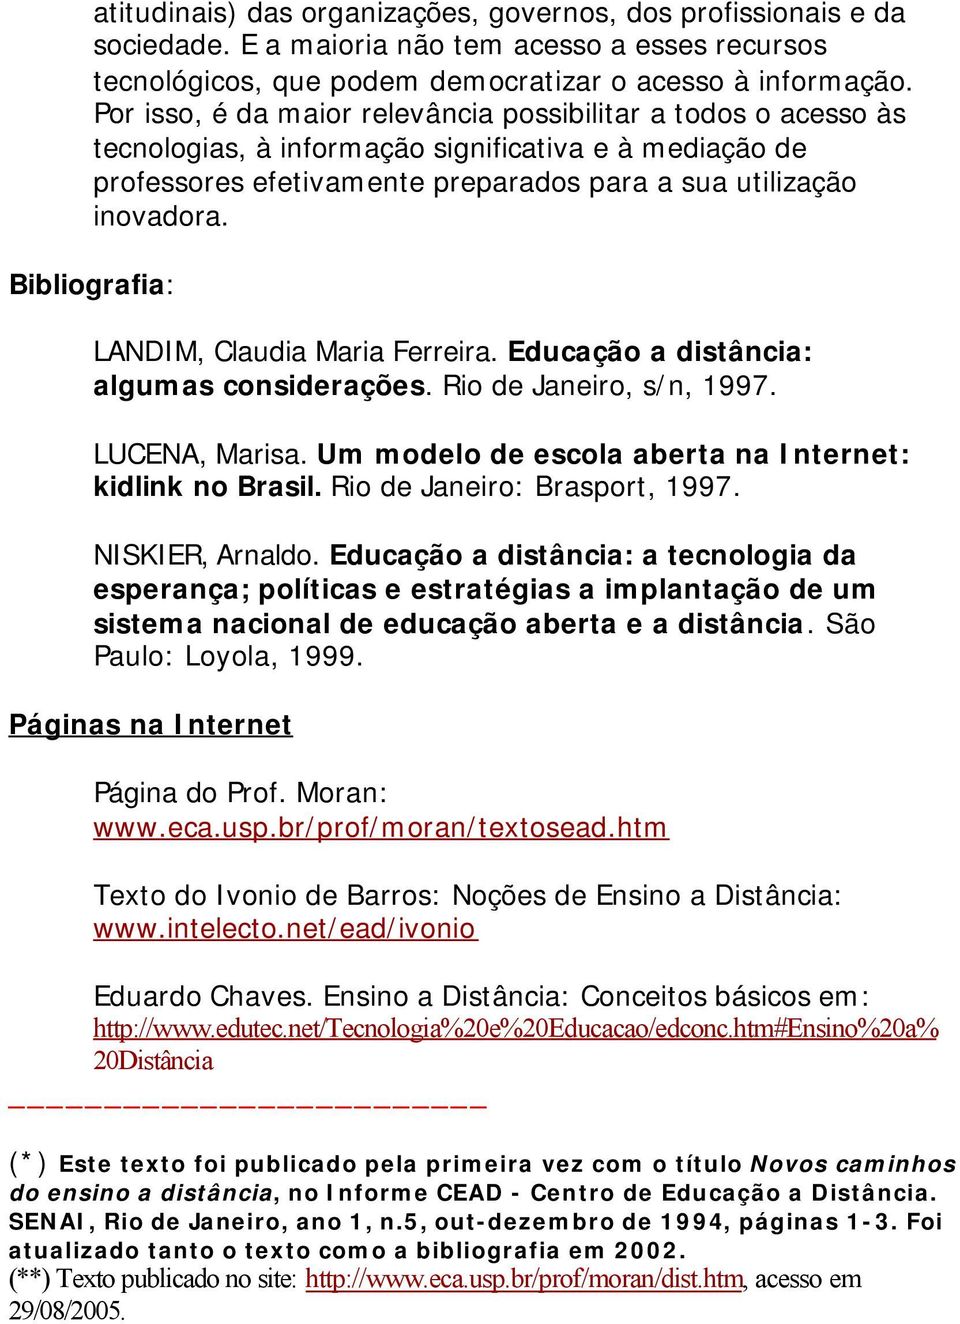 Bibliografia: LANDIM, Claudia Maria Ferreira. Educação a distância: algumas considerações. Rio de Janeiro, s/n, 1997. LUCENA, Marisa. Um modelo de escola aberta na Internet: kidlink no Brasil.